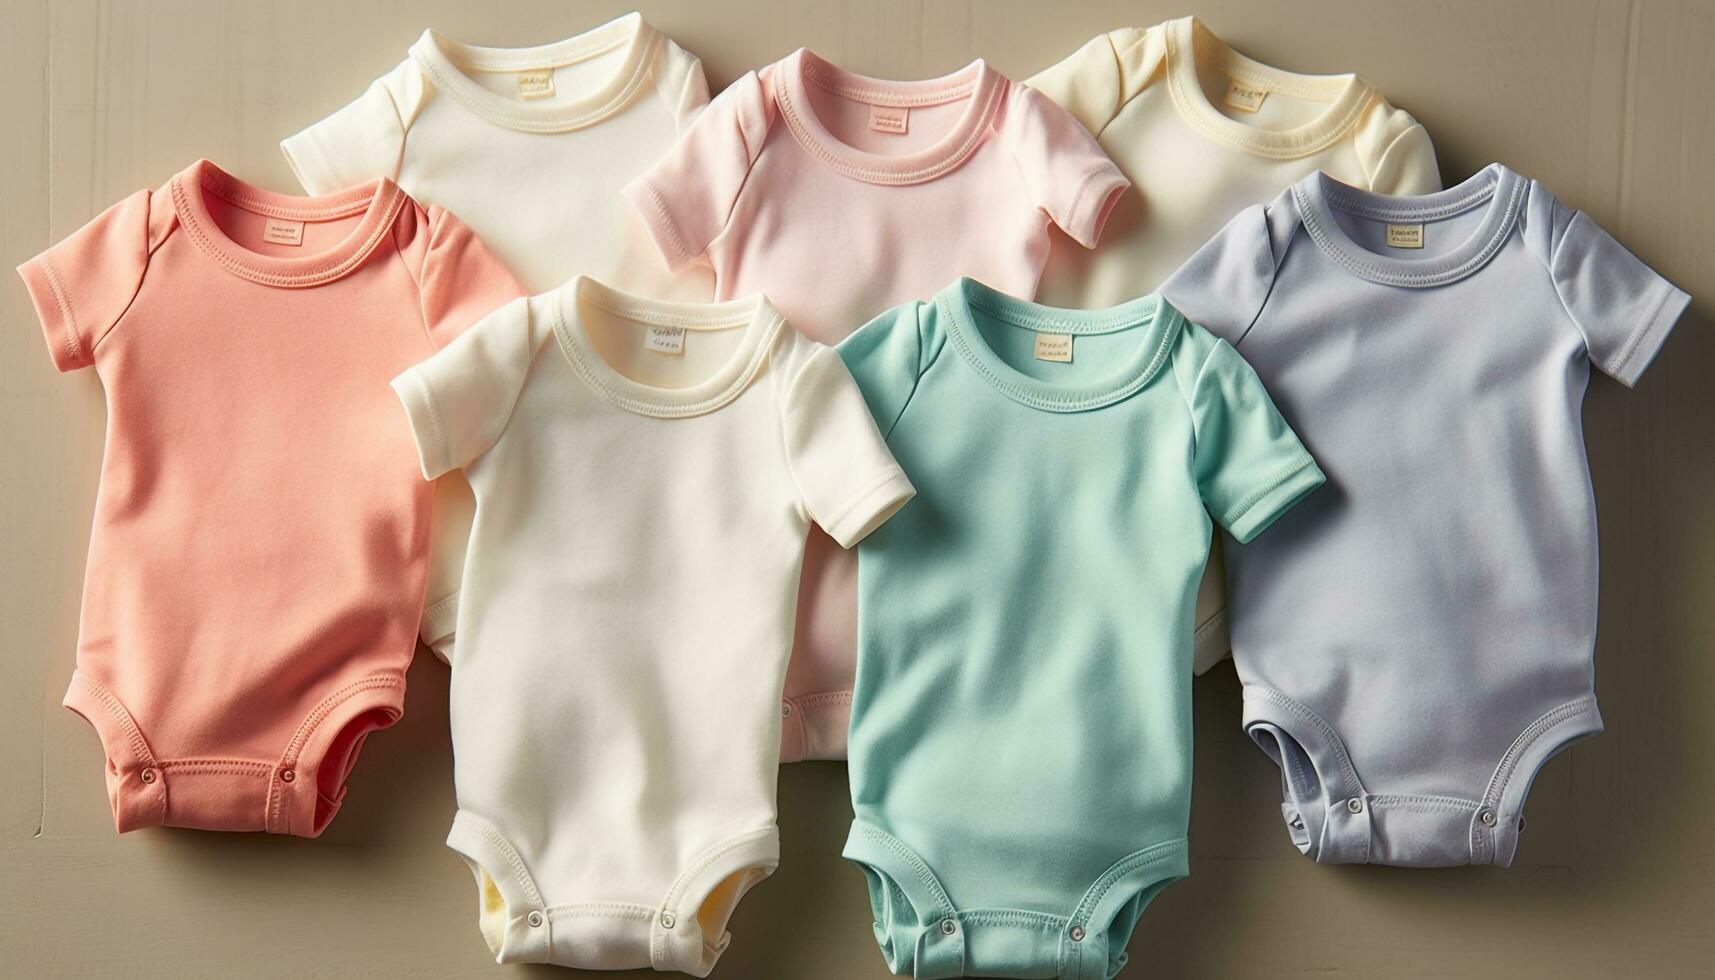 schattig baby kleding verzameling blauw, roze, gestreept, multi gekleurd, klein kledingstukken gegenereerd door ai foto